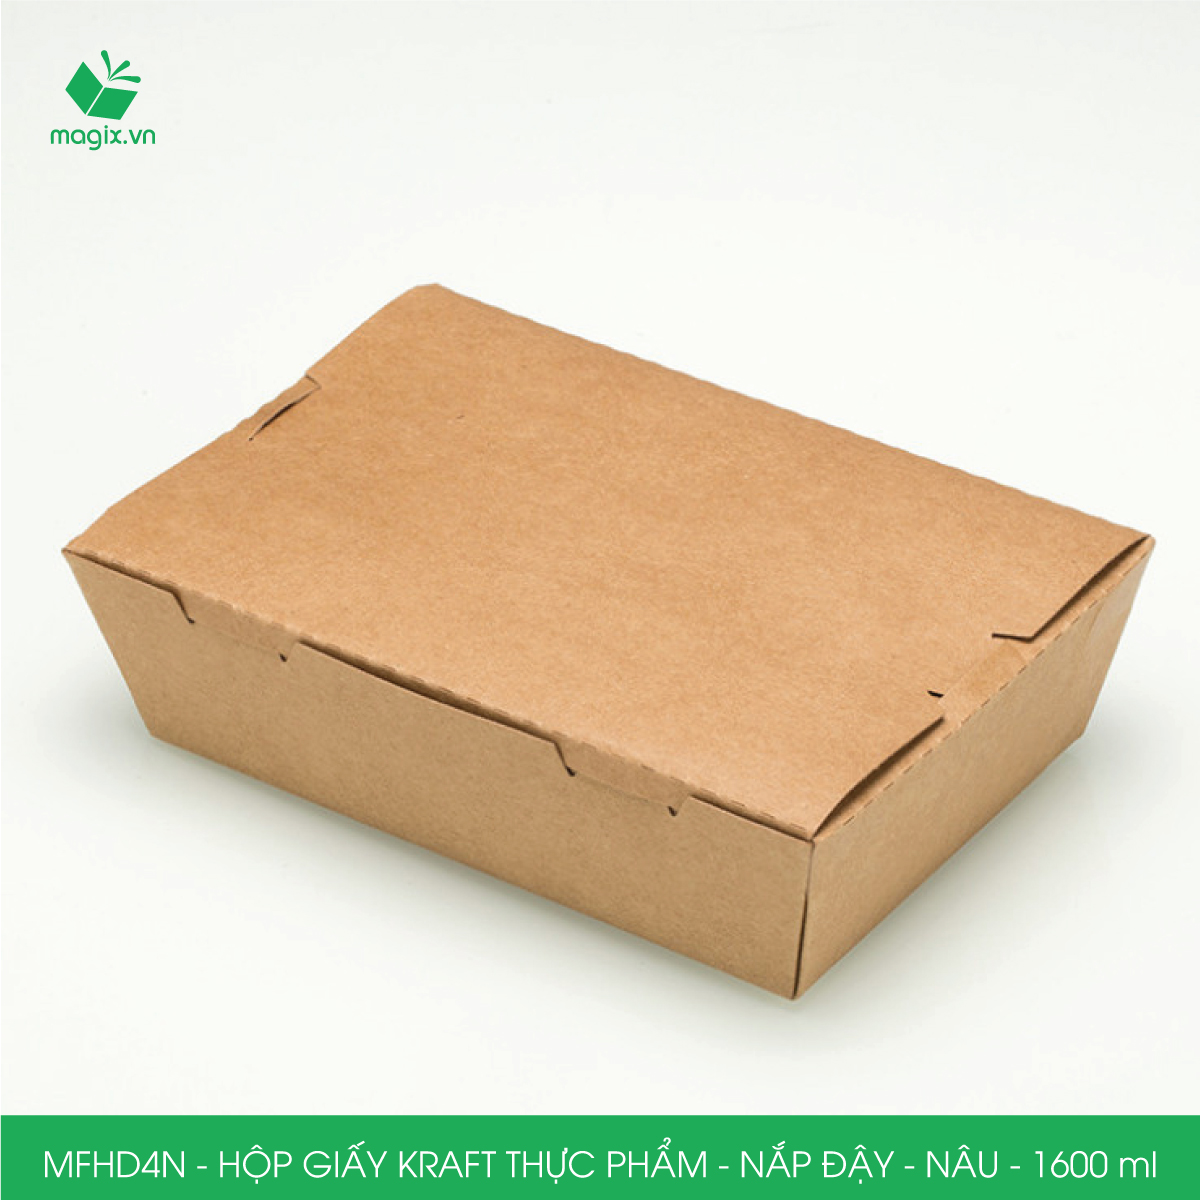 MFHD4N - Combo 25 hộp giấy kraft thực phẩm 1600ml, hộp đựng thức ăn nắp đậy màu nâu, hộp gói đồ ăn mang đi